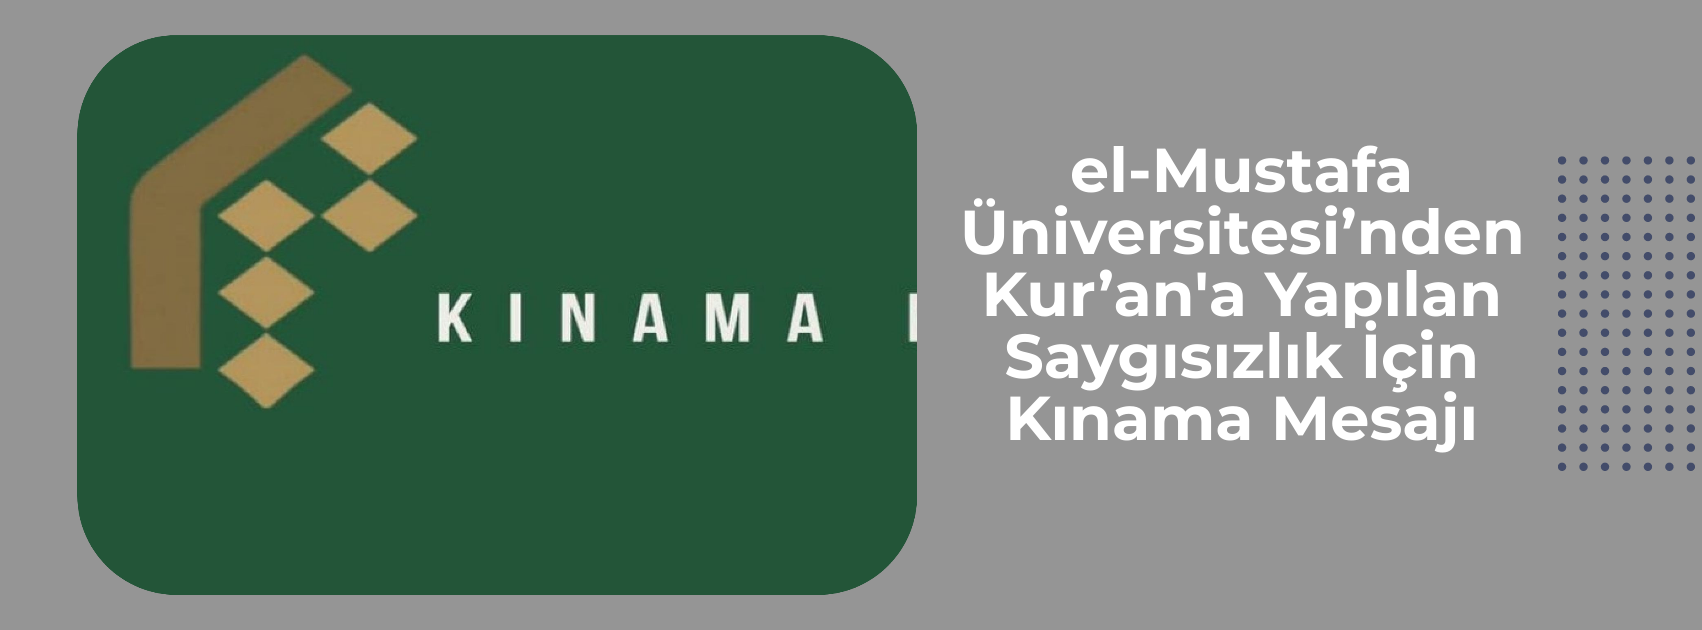 el-Mustafa Üniversitesi’nden İsveç’te Kur’an-ı Kerim’e Yapılan Saygısızlık İçin Kınama Mesajı